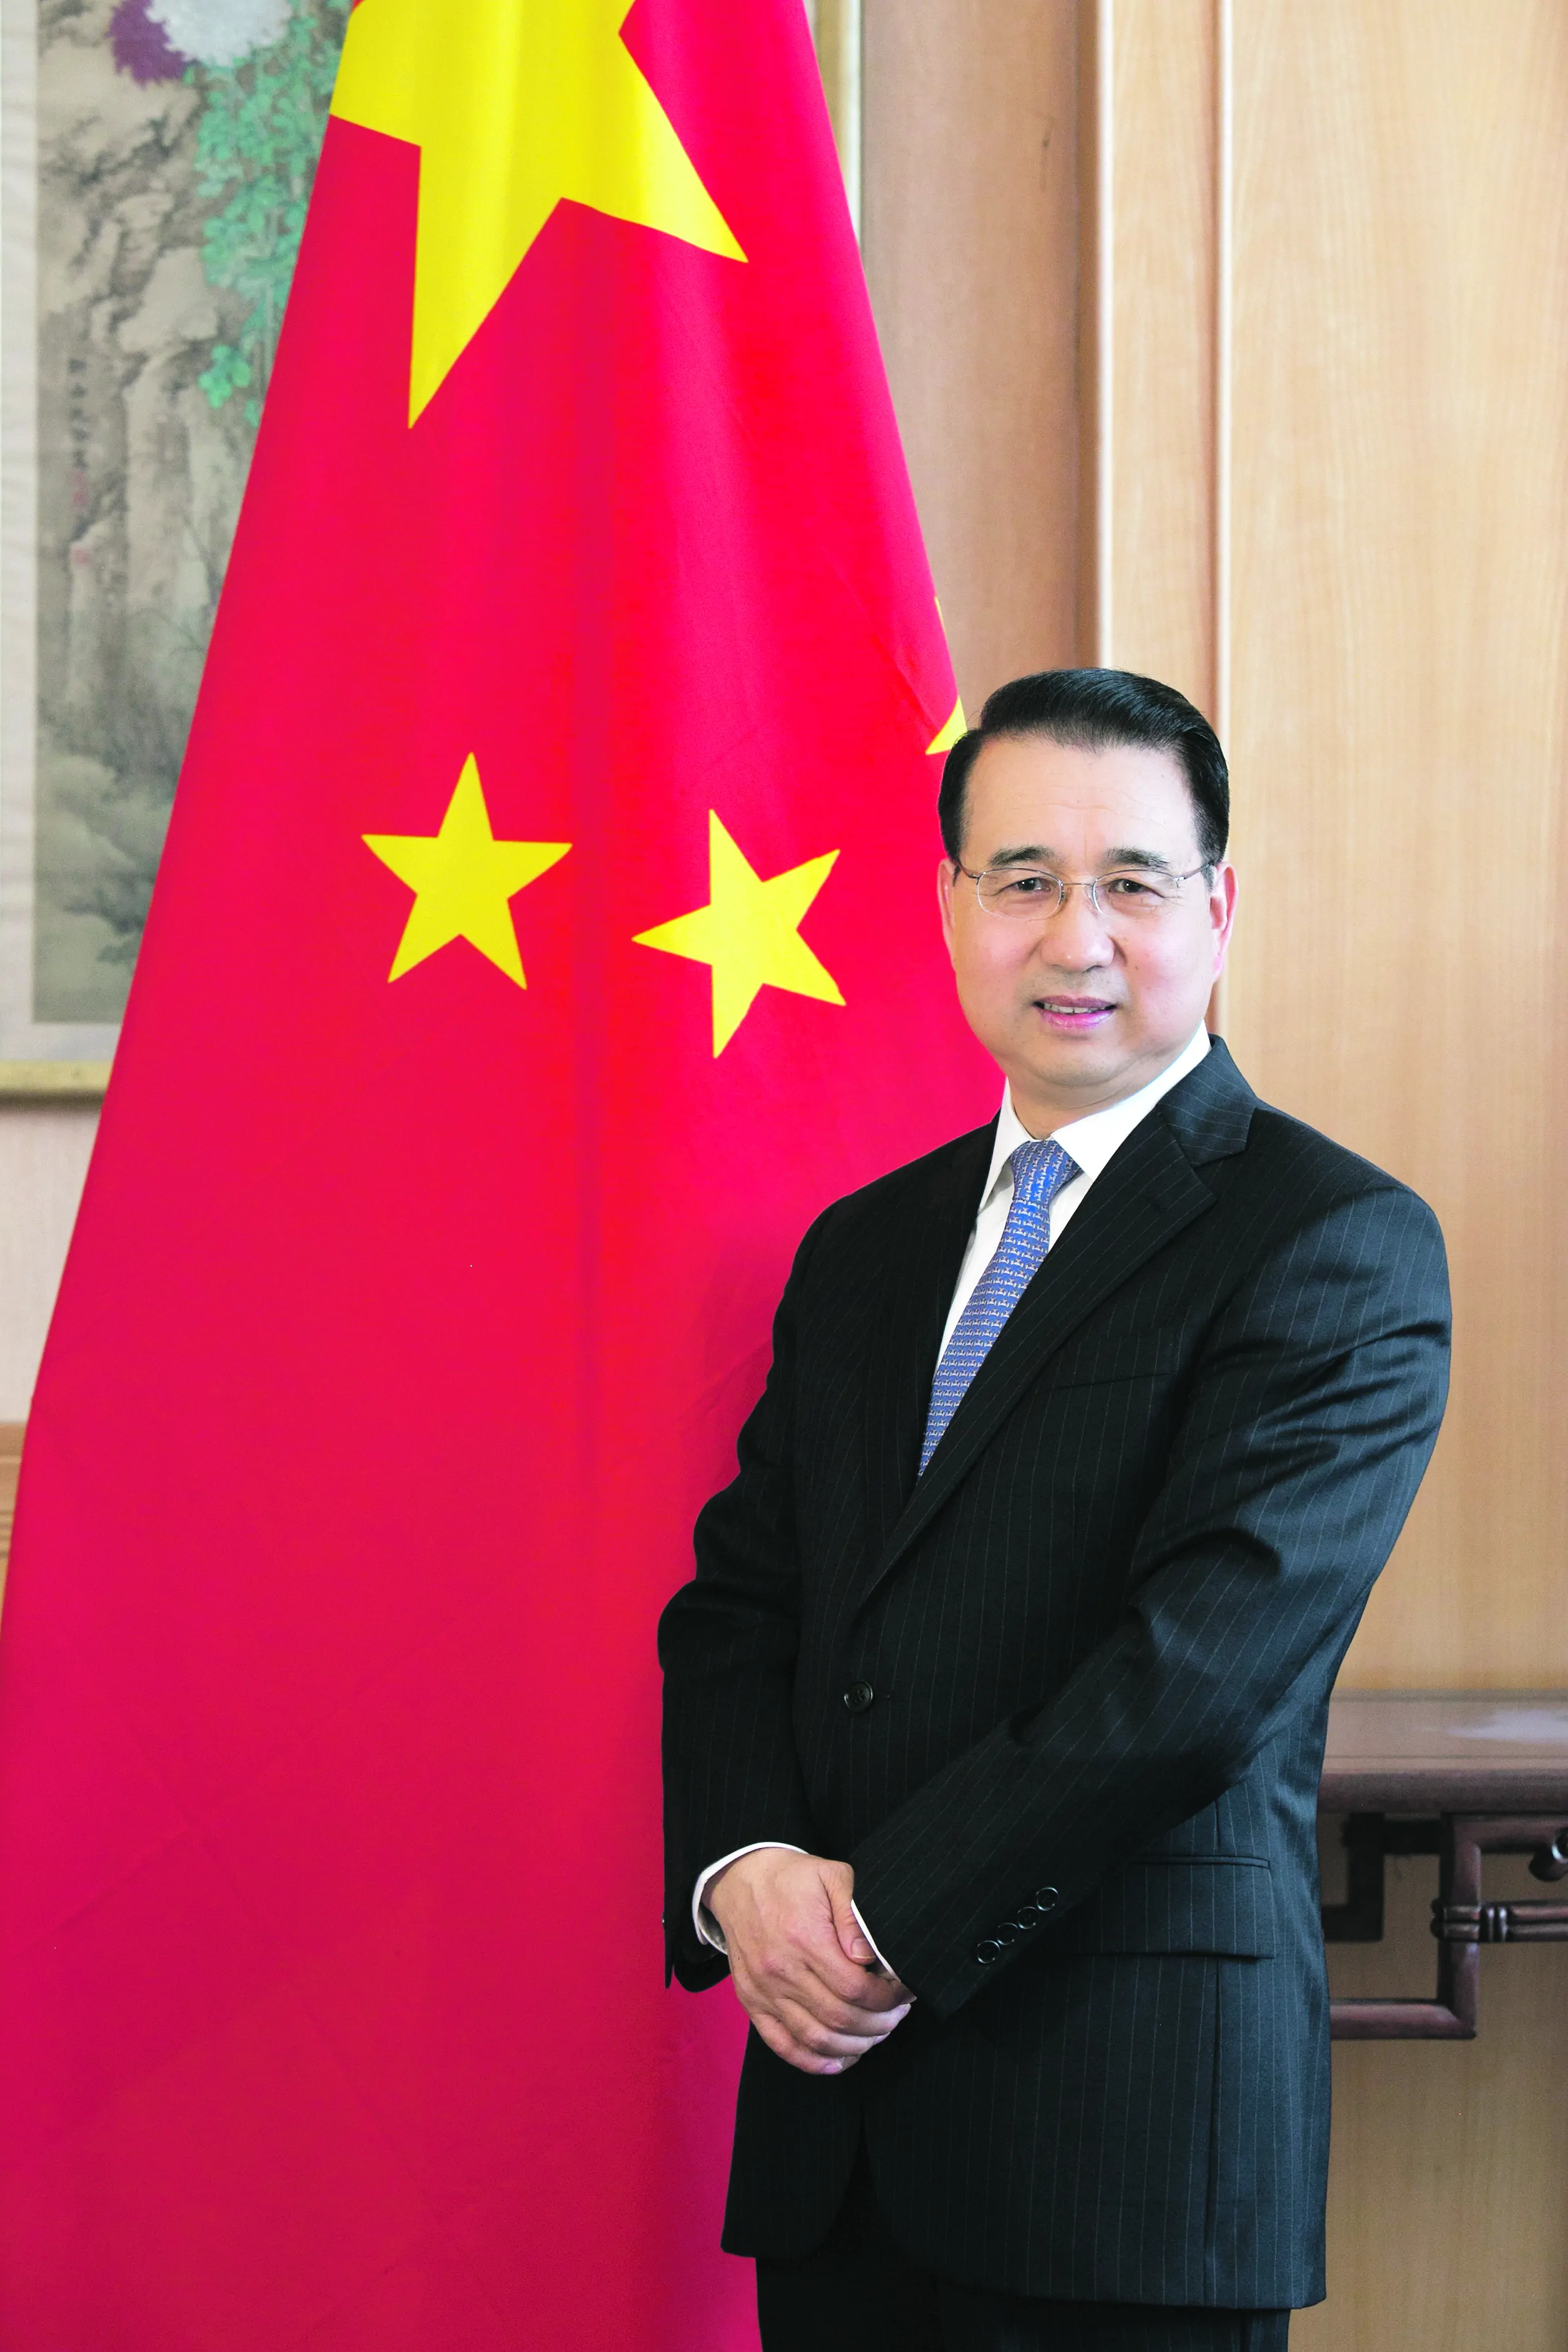 Osiągnięcia Chin w zakresie praw człowieka zasługują na szacunek